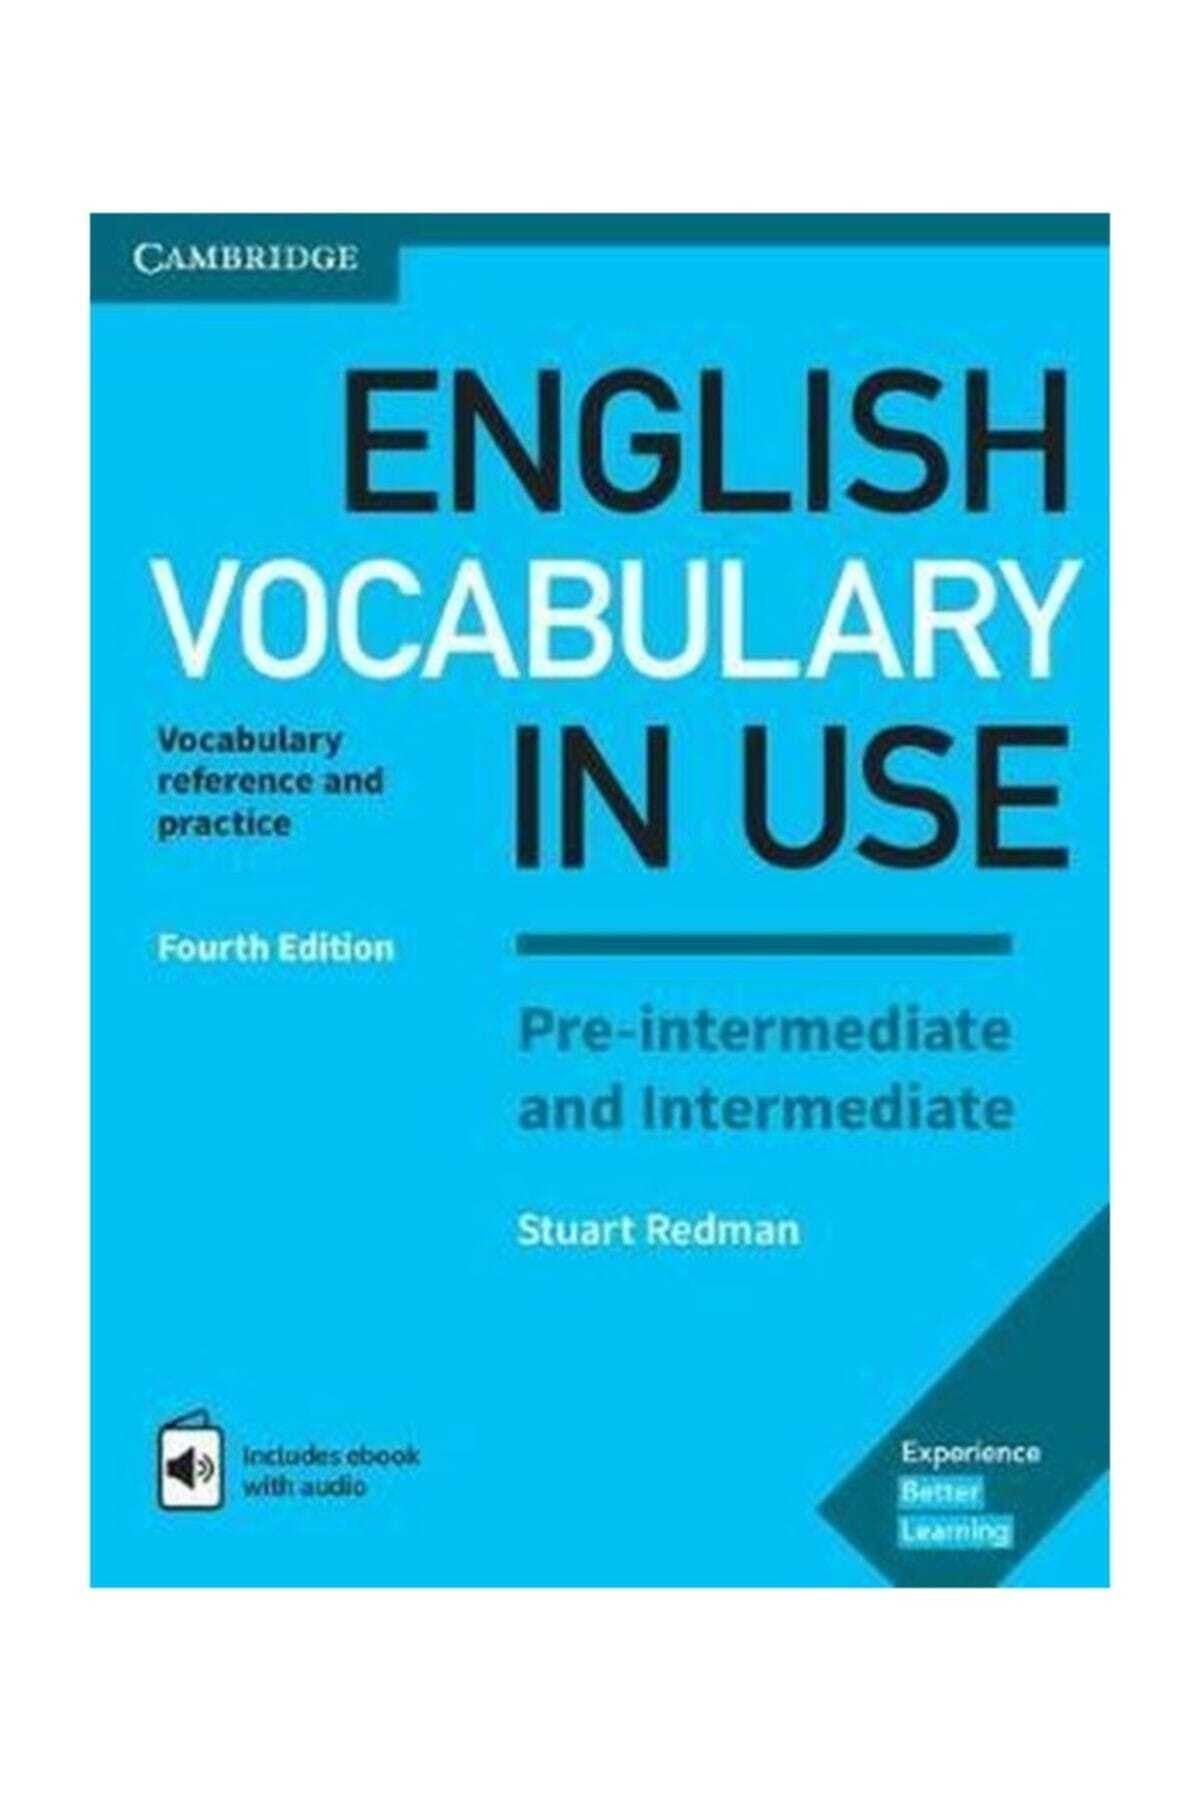 Cambridge University English Vocabulary In Use Pre-intermediate And Intermediate Fourth Edition